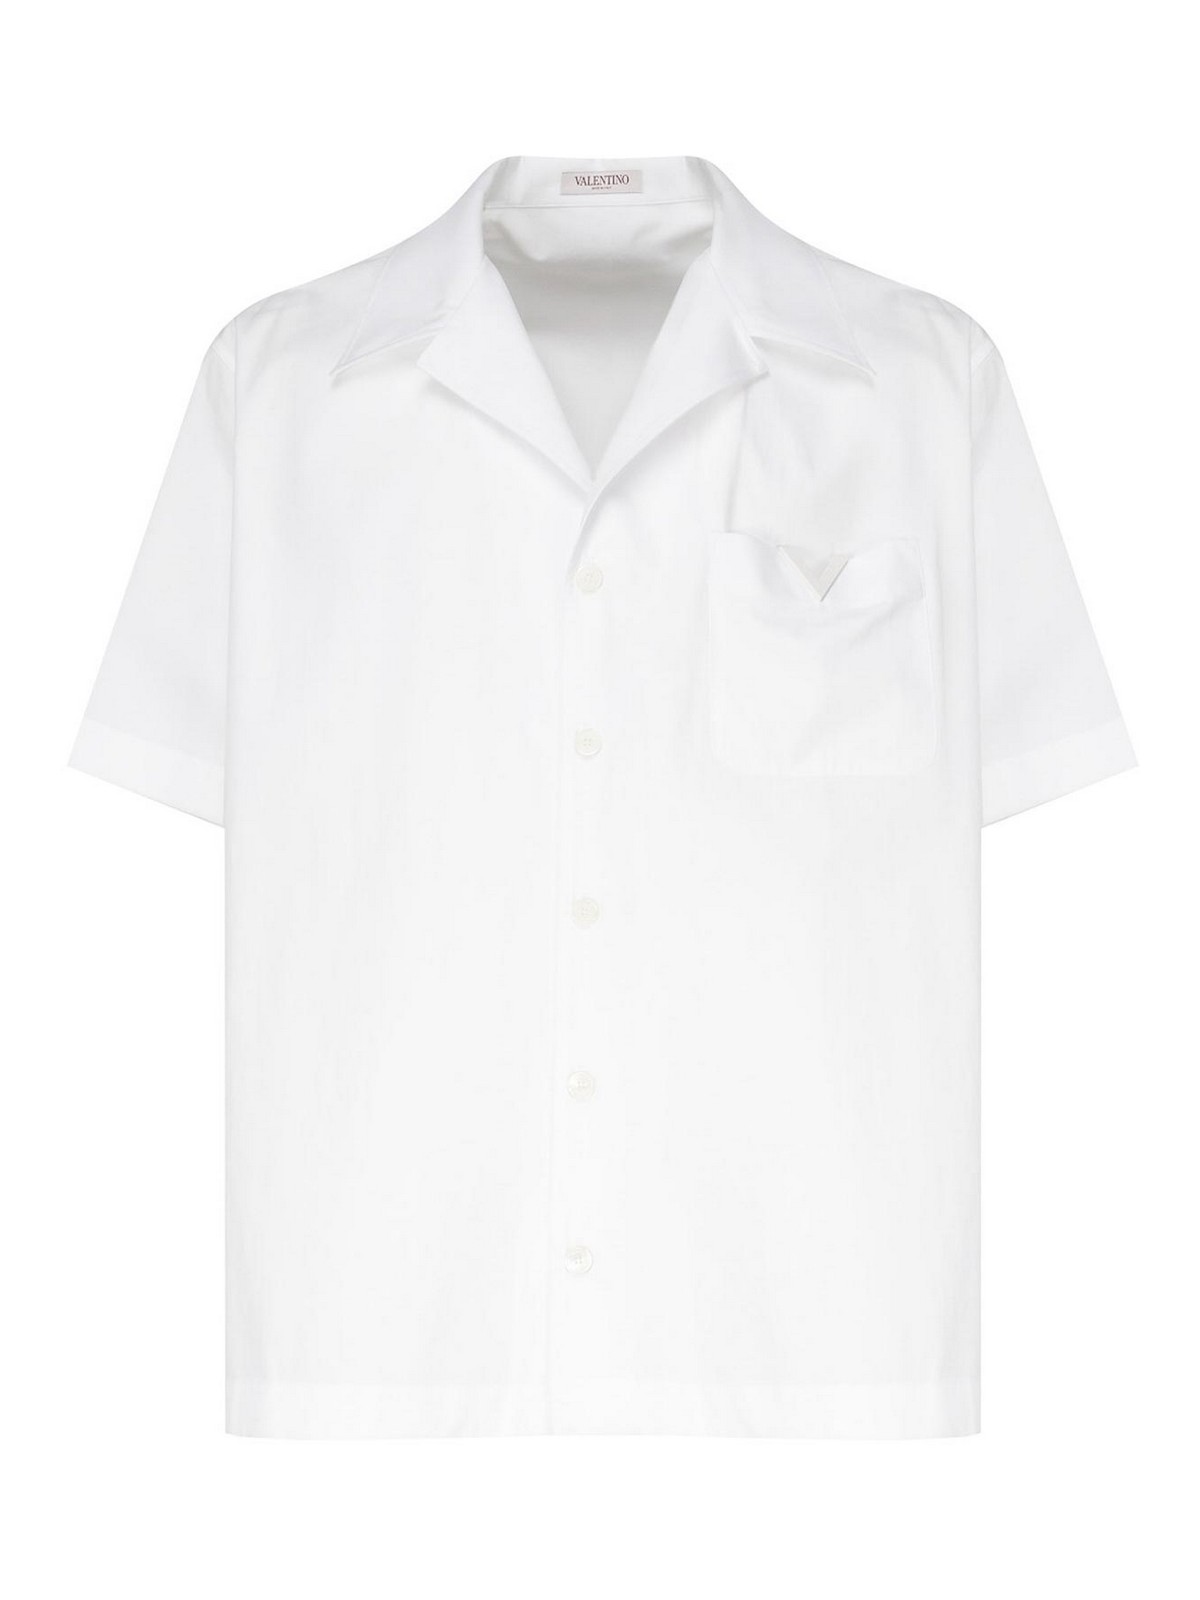 Valentino White V-logo Cotton Shirt